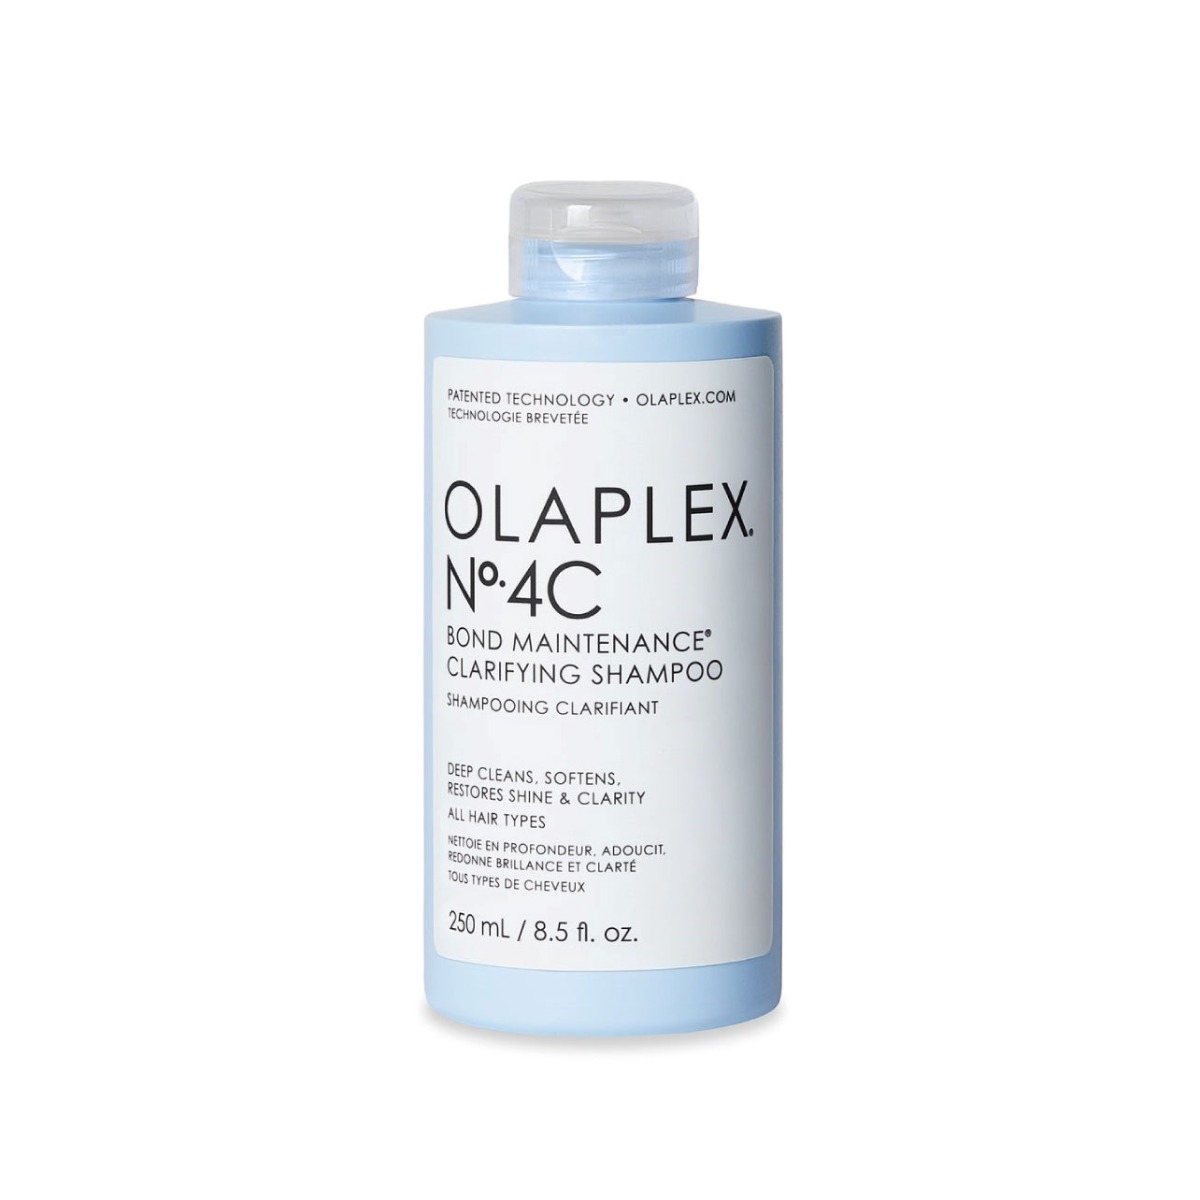 Olaplex N. 4C Bond Maintenance Clarifying Shampoo 250 ml